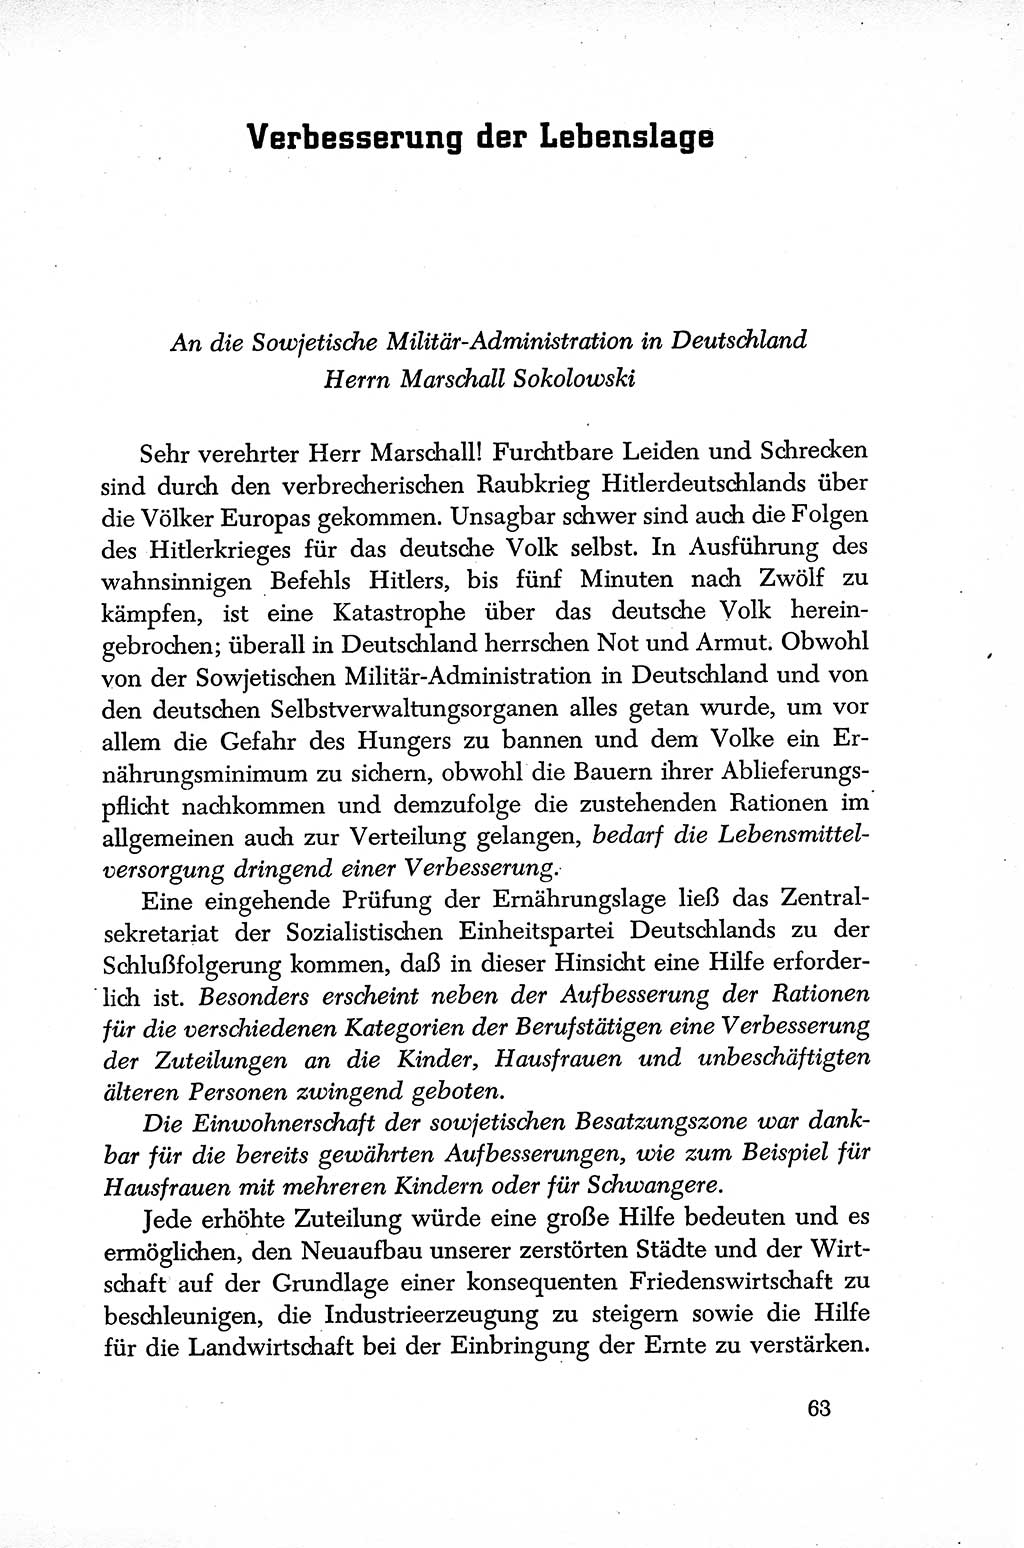 Dokumente der Sozialistischen Einheitspartei Deutschlands (SED) [Sowjetische Besatzungszone (SBZ) Deutschlands] 1946-1948, Seite 63 (Dok. SED SBZ Dtl. 1946-1948, S. 63)